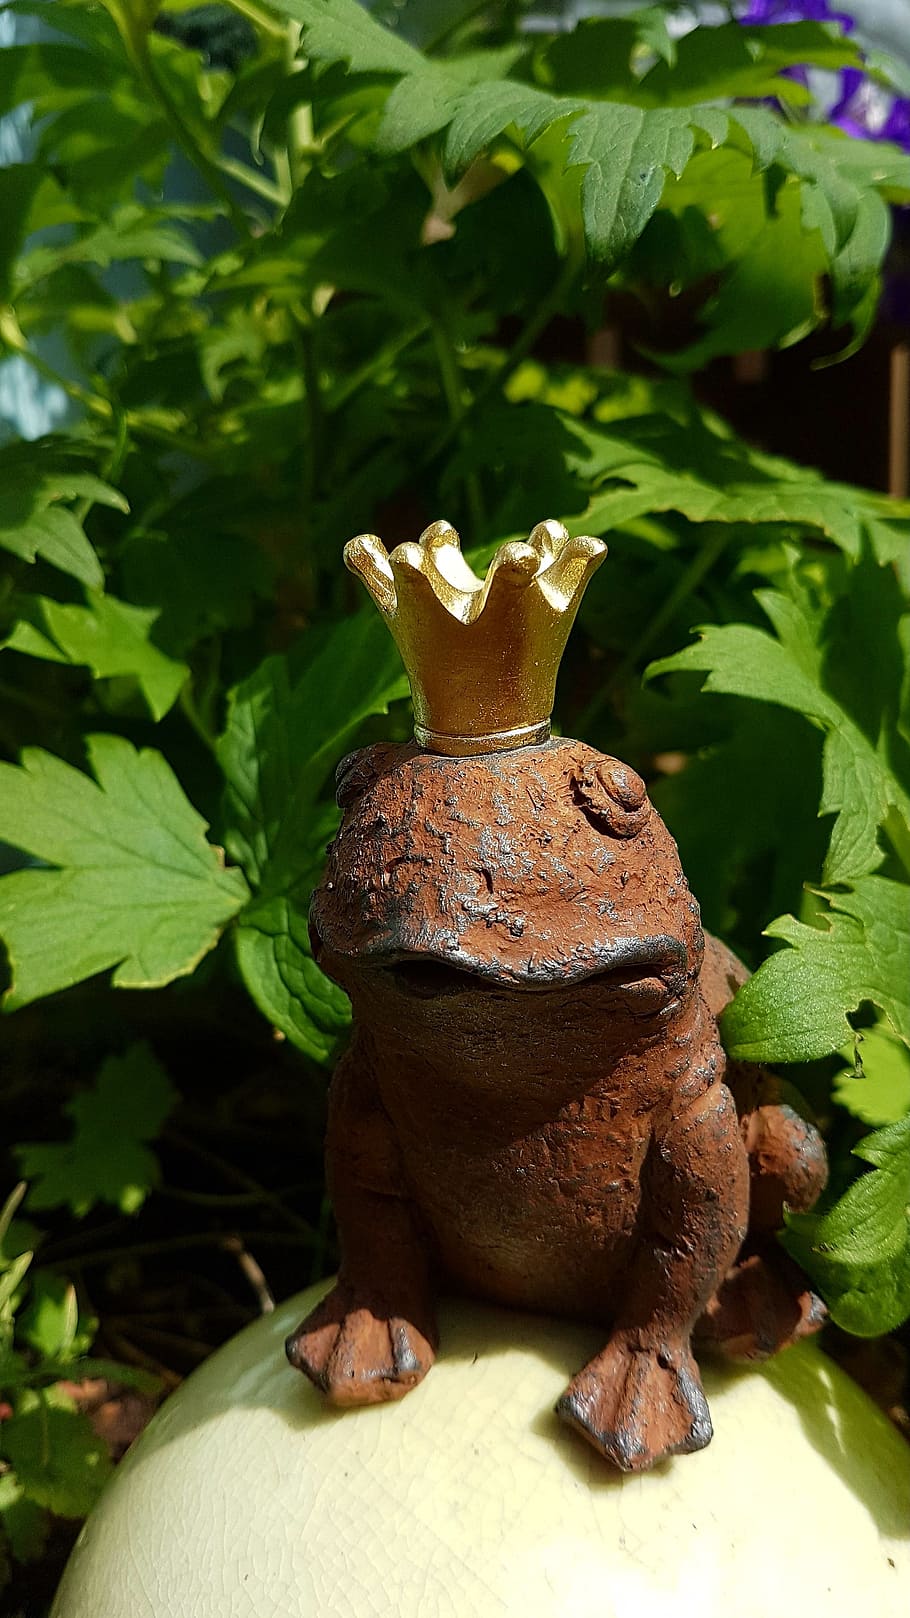 frog, frog prince, golden crown, sad, plant part, leaf, no people